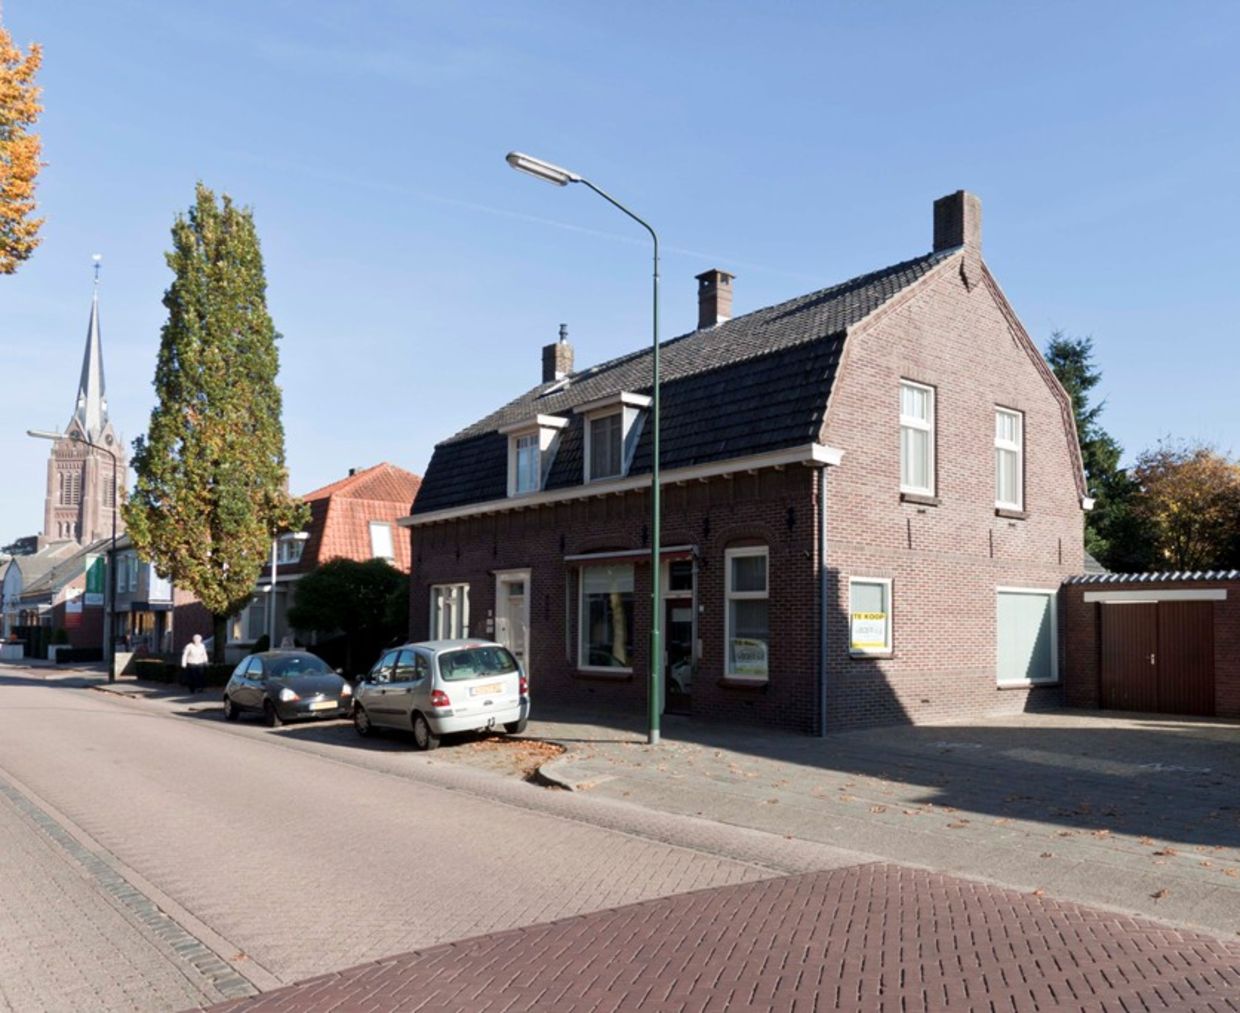 TE KOOP Kerkstraat 55 5076 AT Haaren Makelaardij Van den Boer o.g. Gijzelsestraat 3 A 5268 KM Helvoirt 0411-642116 info@vandenboerog.